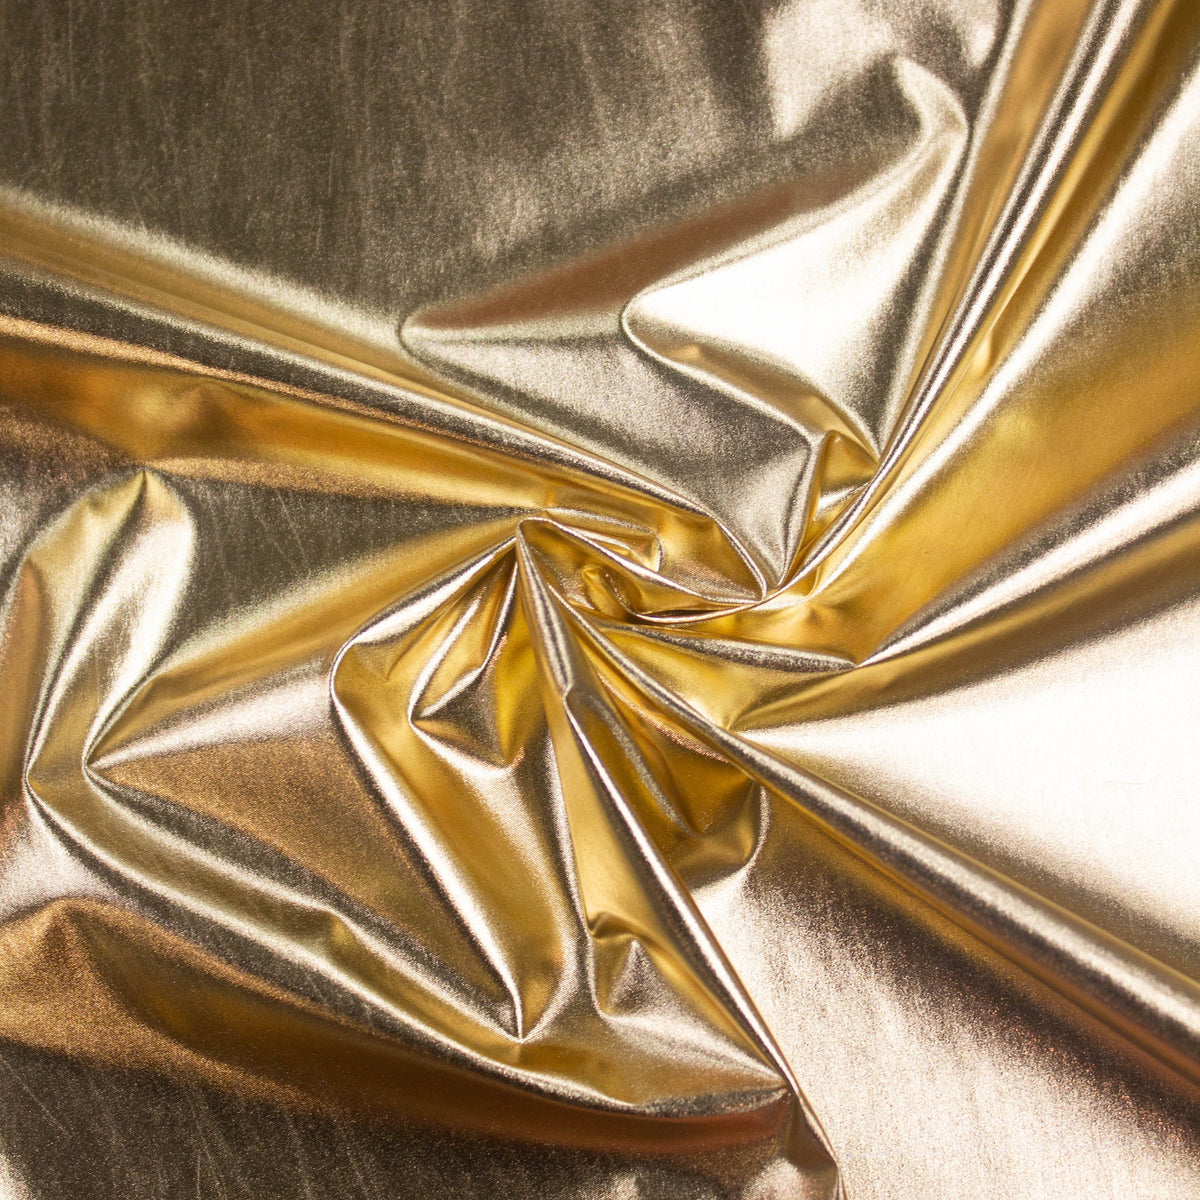 Custom Panties shown in Silver Metallic Foil coated Spandex